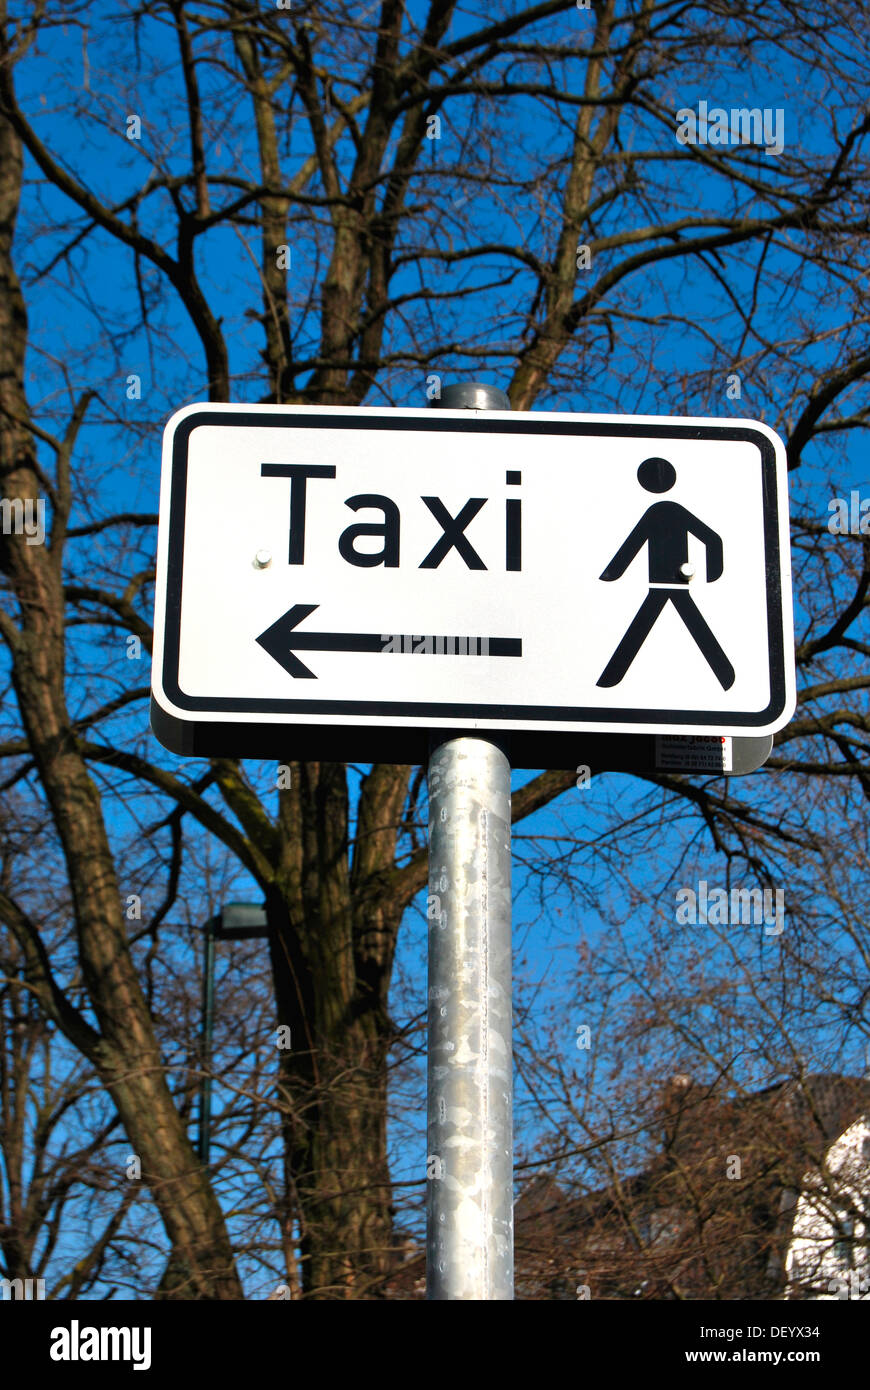 Signe de taxi avec une flèche et d'un pictogramme d'un homme marchant, panneaux de circulation, Düsseldorf, Rhénanie du Nord-Westphalie Banque D'Images